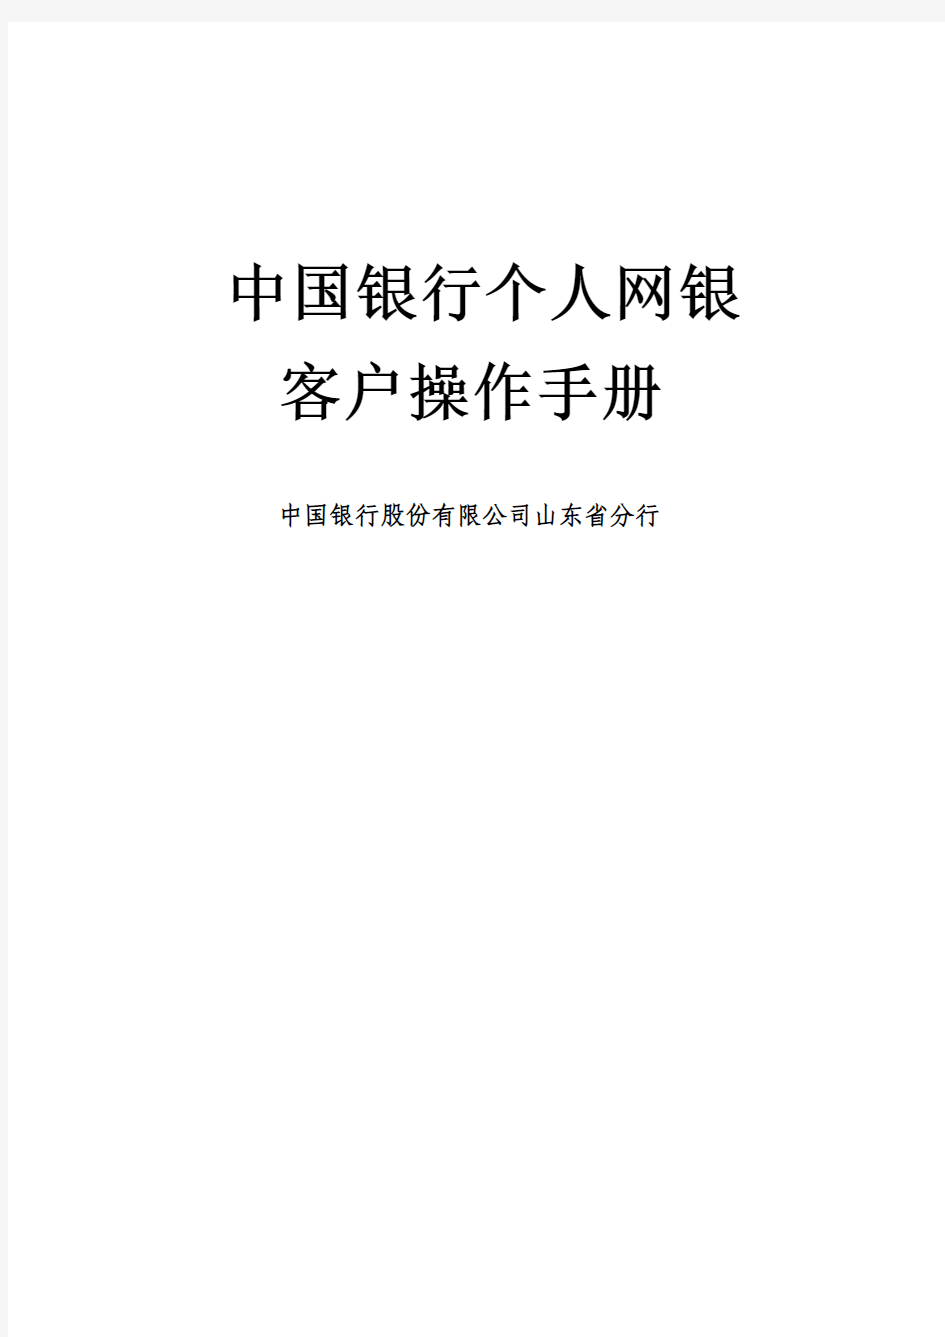 中国银行个人网上银行用户BOCNET3.2操作手册word版